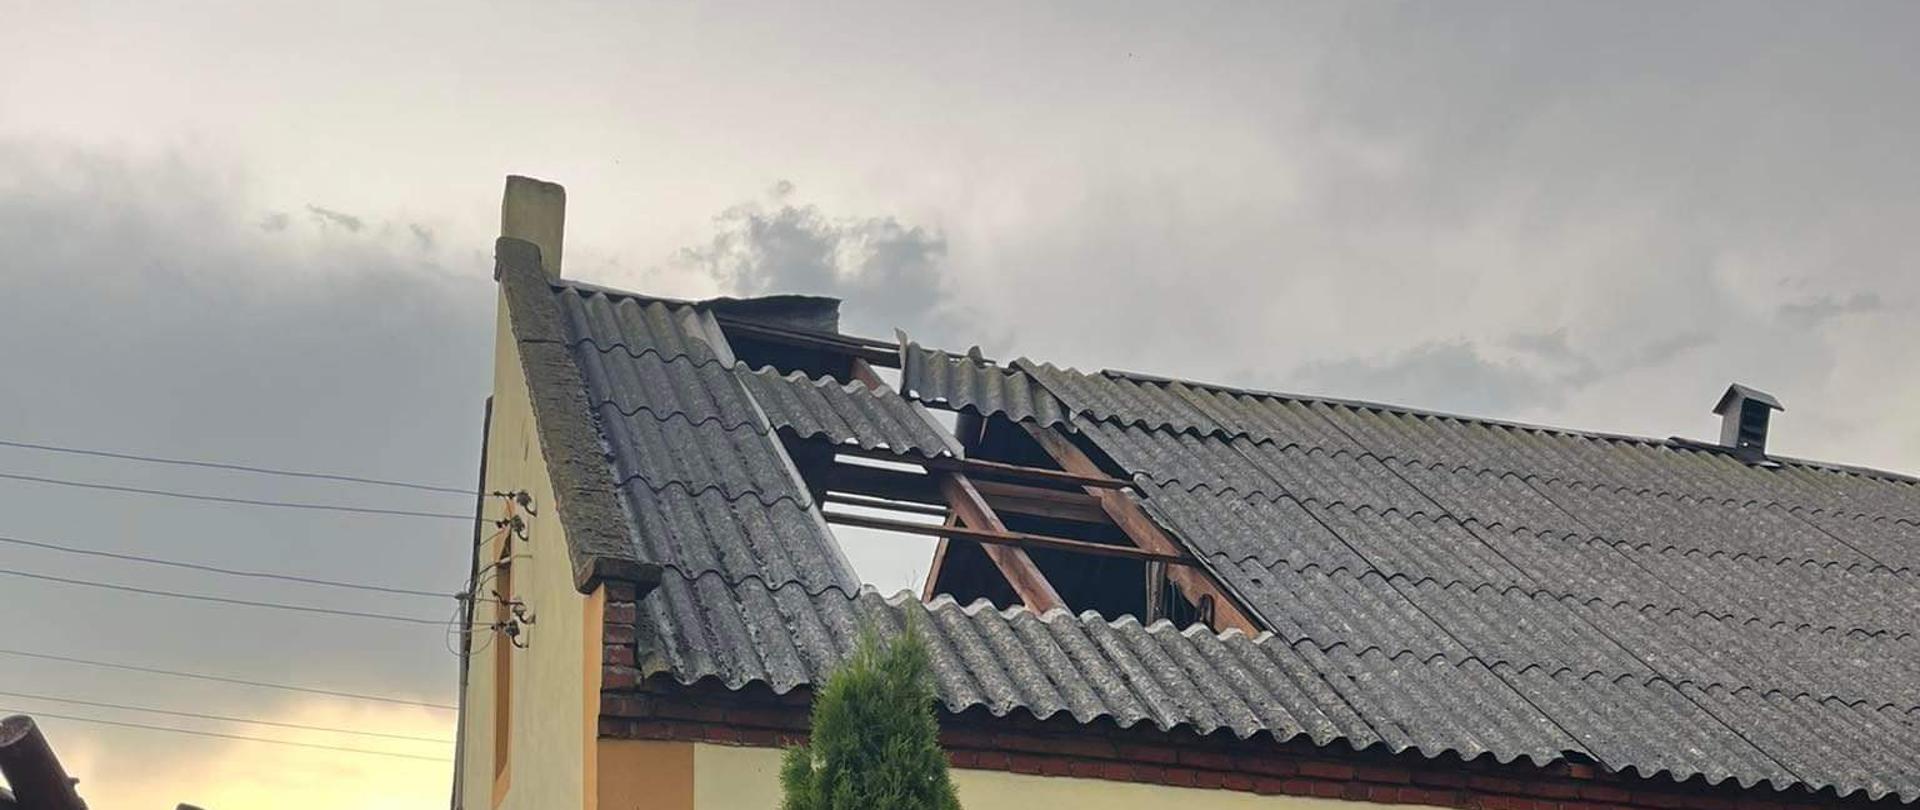 Zdjęcie przedstawia dom, w którym wichury uszkodziły dach